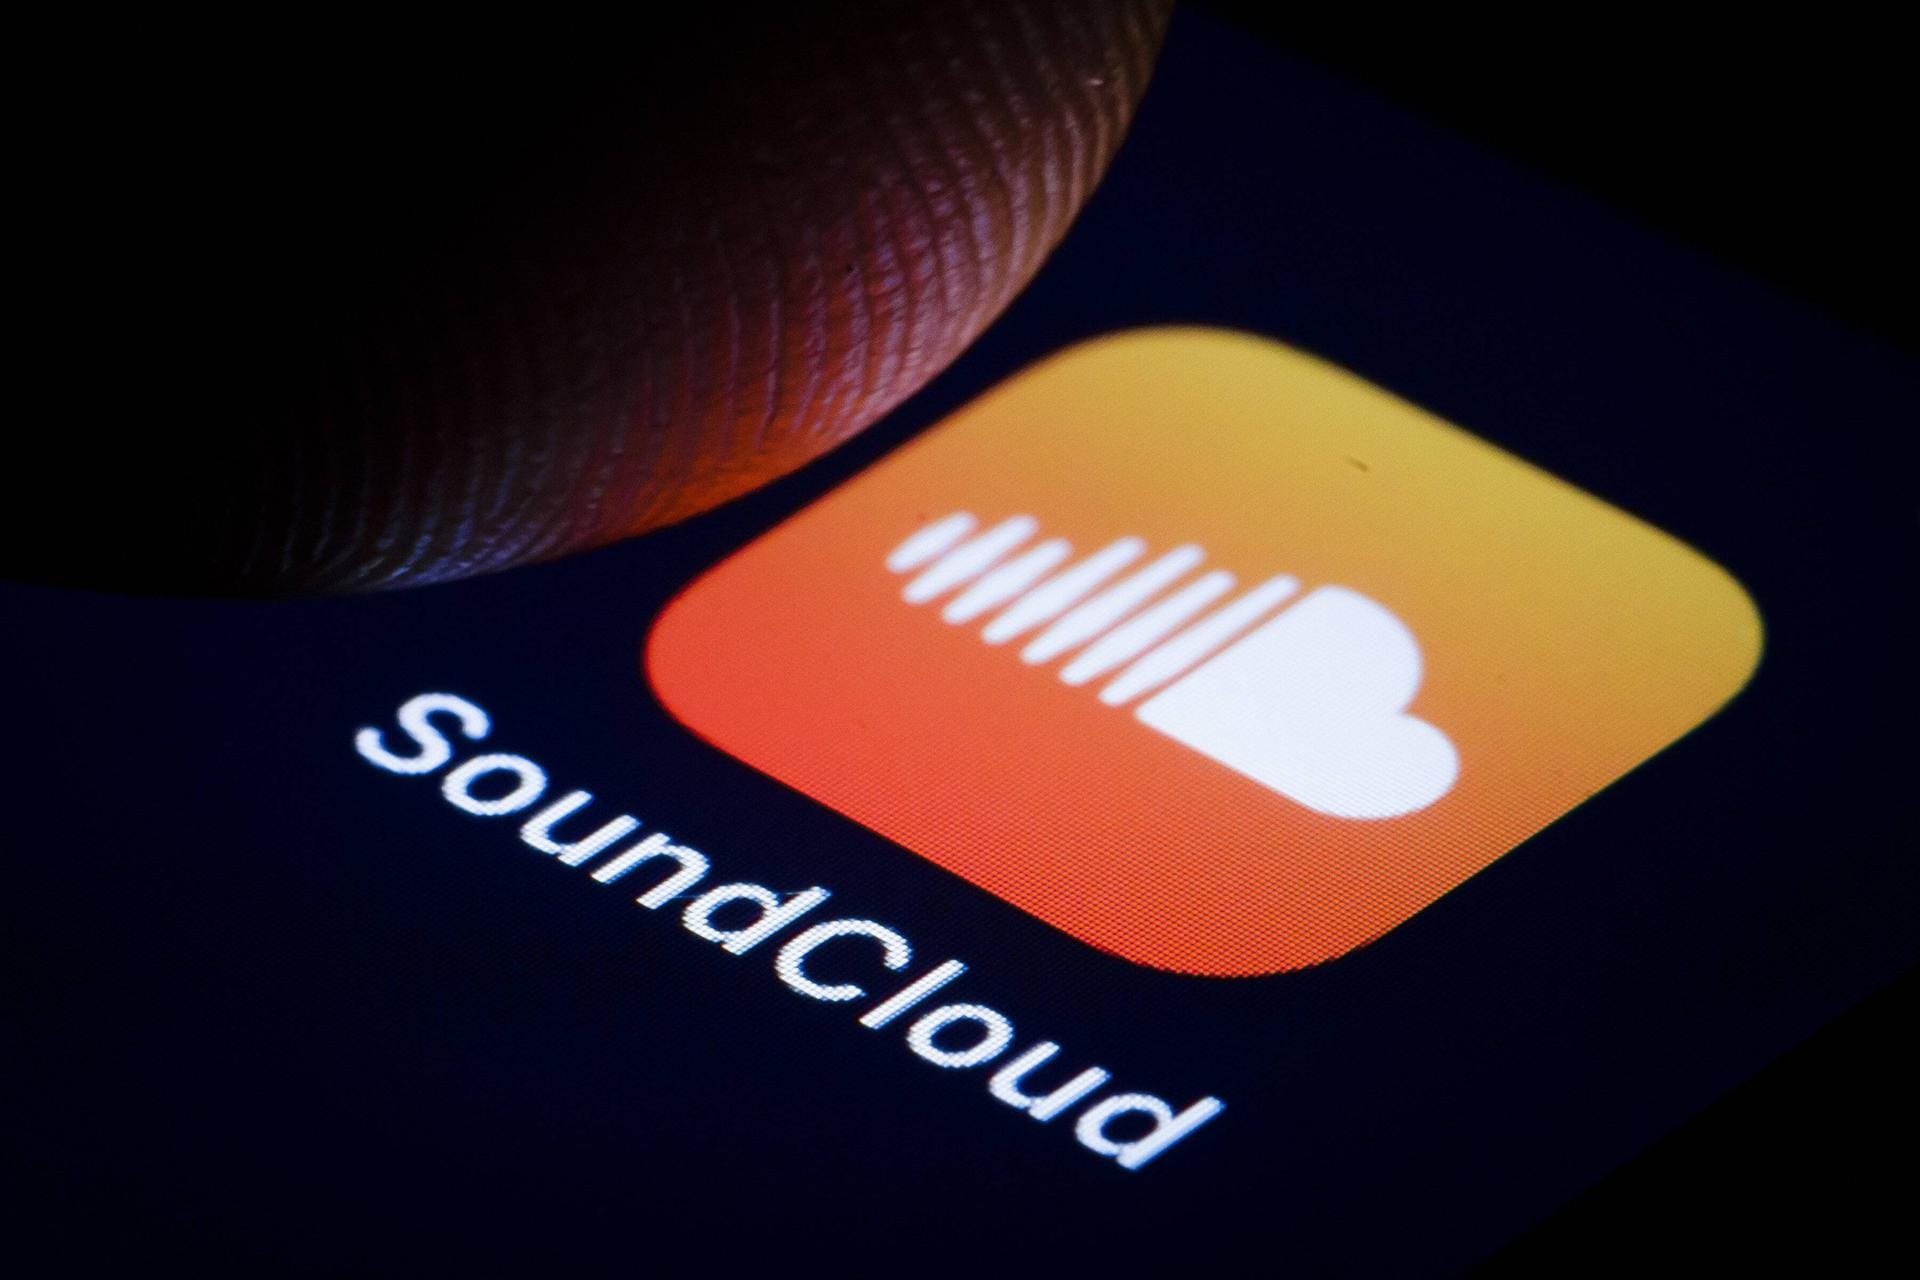 Platz 2: Soundcloud – Finanzierungen in Höhe von 468 Millionen US-Dollar. Das Berliner Unternehmen ist ein Netzwerk für Audio-Dateien. Sie können hochgeladen, verbreitet und zum Download angeboten werden.